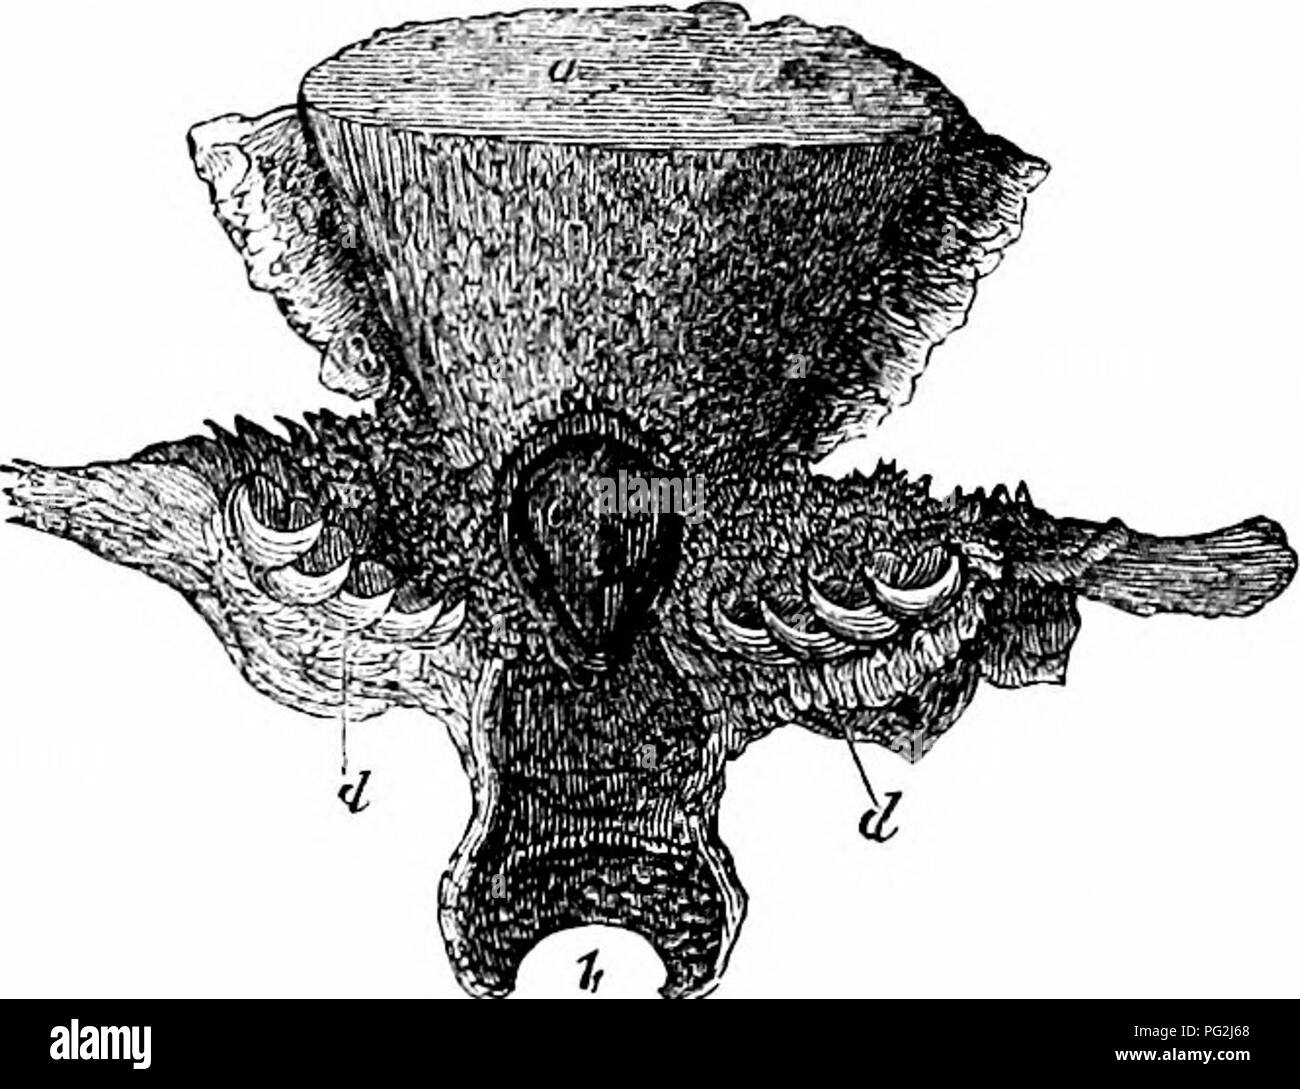 . Sull'anatomia dei vertebrati. Vertebrati, Anatomia, comparativo; 1866. Ganasce e denti iMijUohdcs). tra i villiform raduliform e tipi. Denti Setiform sono comuni nei pesci là chiamato Clifetodonts;' in genere Citharina essi bifurcate in corrispondenza delle loro estremità libere ; in genere Platax che alla fine ci in tre di- rasentano i punti e il cono qui si fonde in lungo e sottile cilindro, fig. 253. A volte il cono è compresso in un incisiva : Lama e questo può essere appuntita e recurved, come nel Murana ; o di filo spinato, come in Tricldurus, e alcuni altri Scomberoids; o può essere Foto Stock